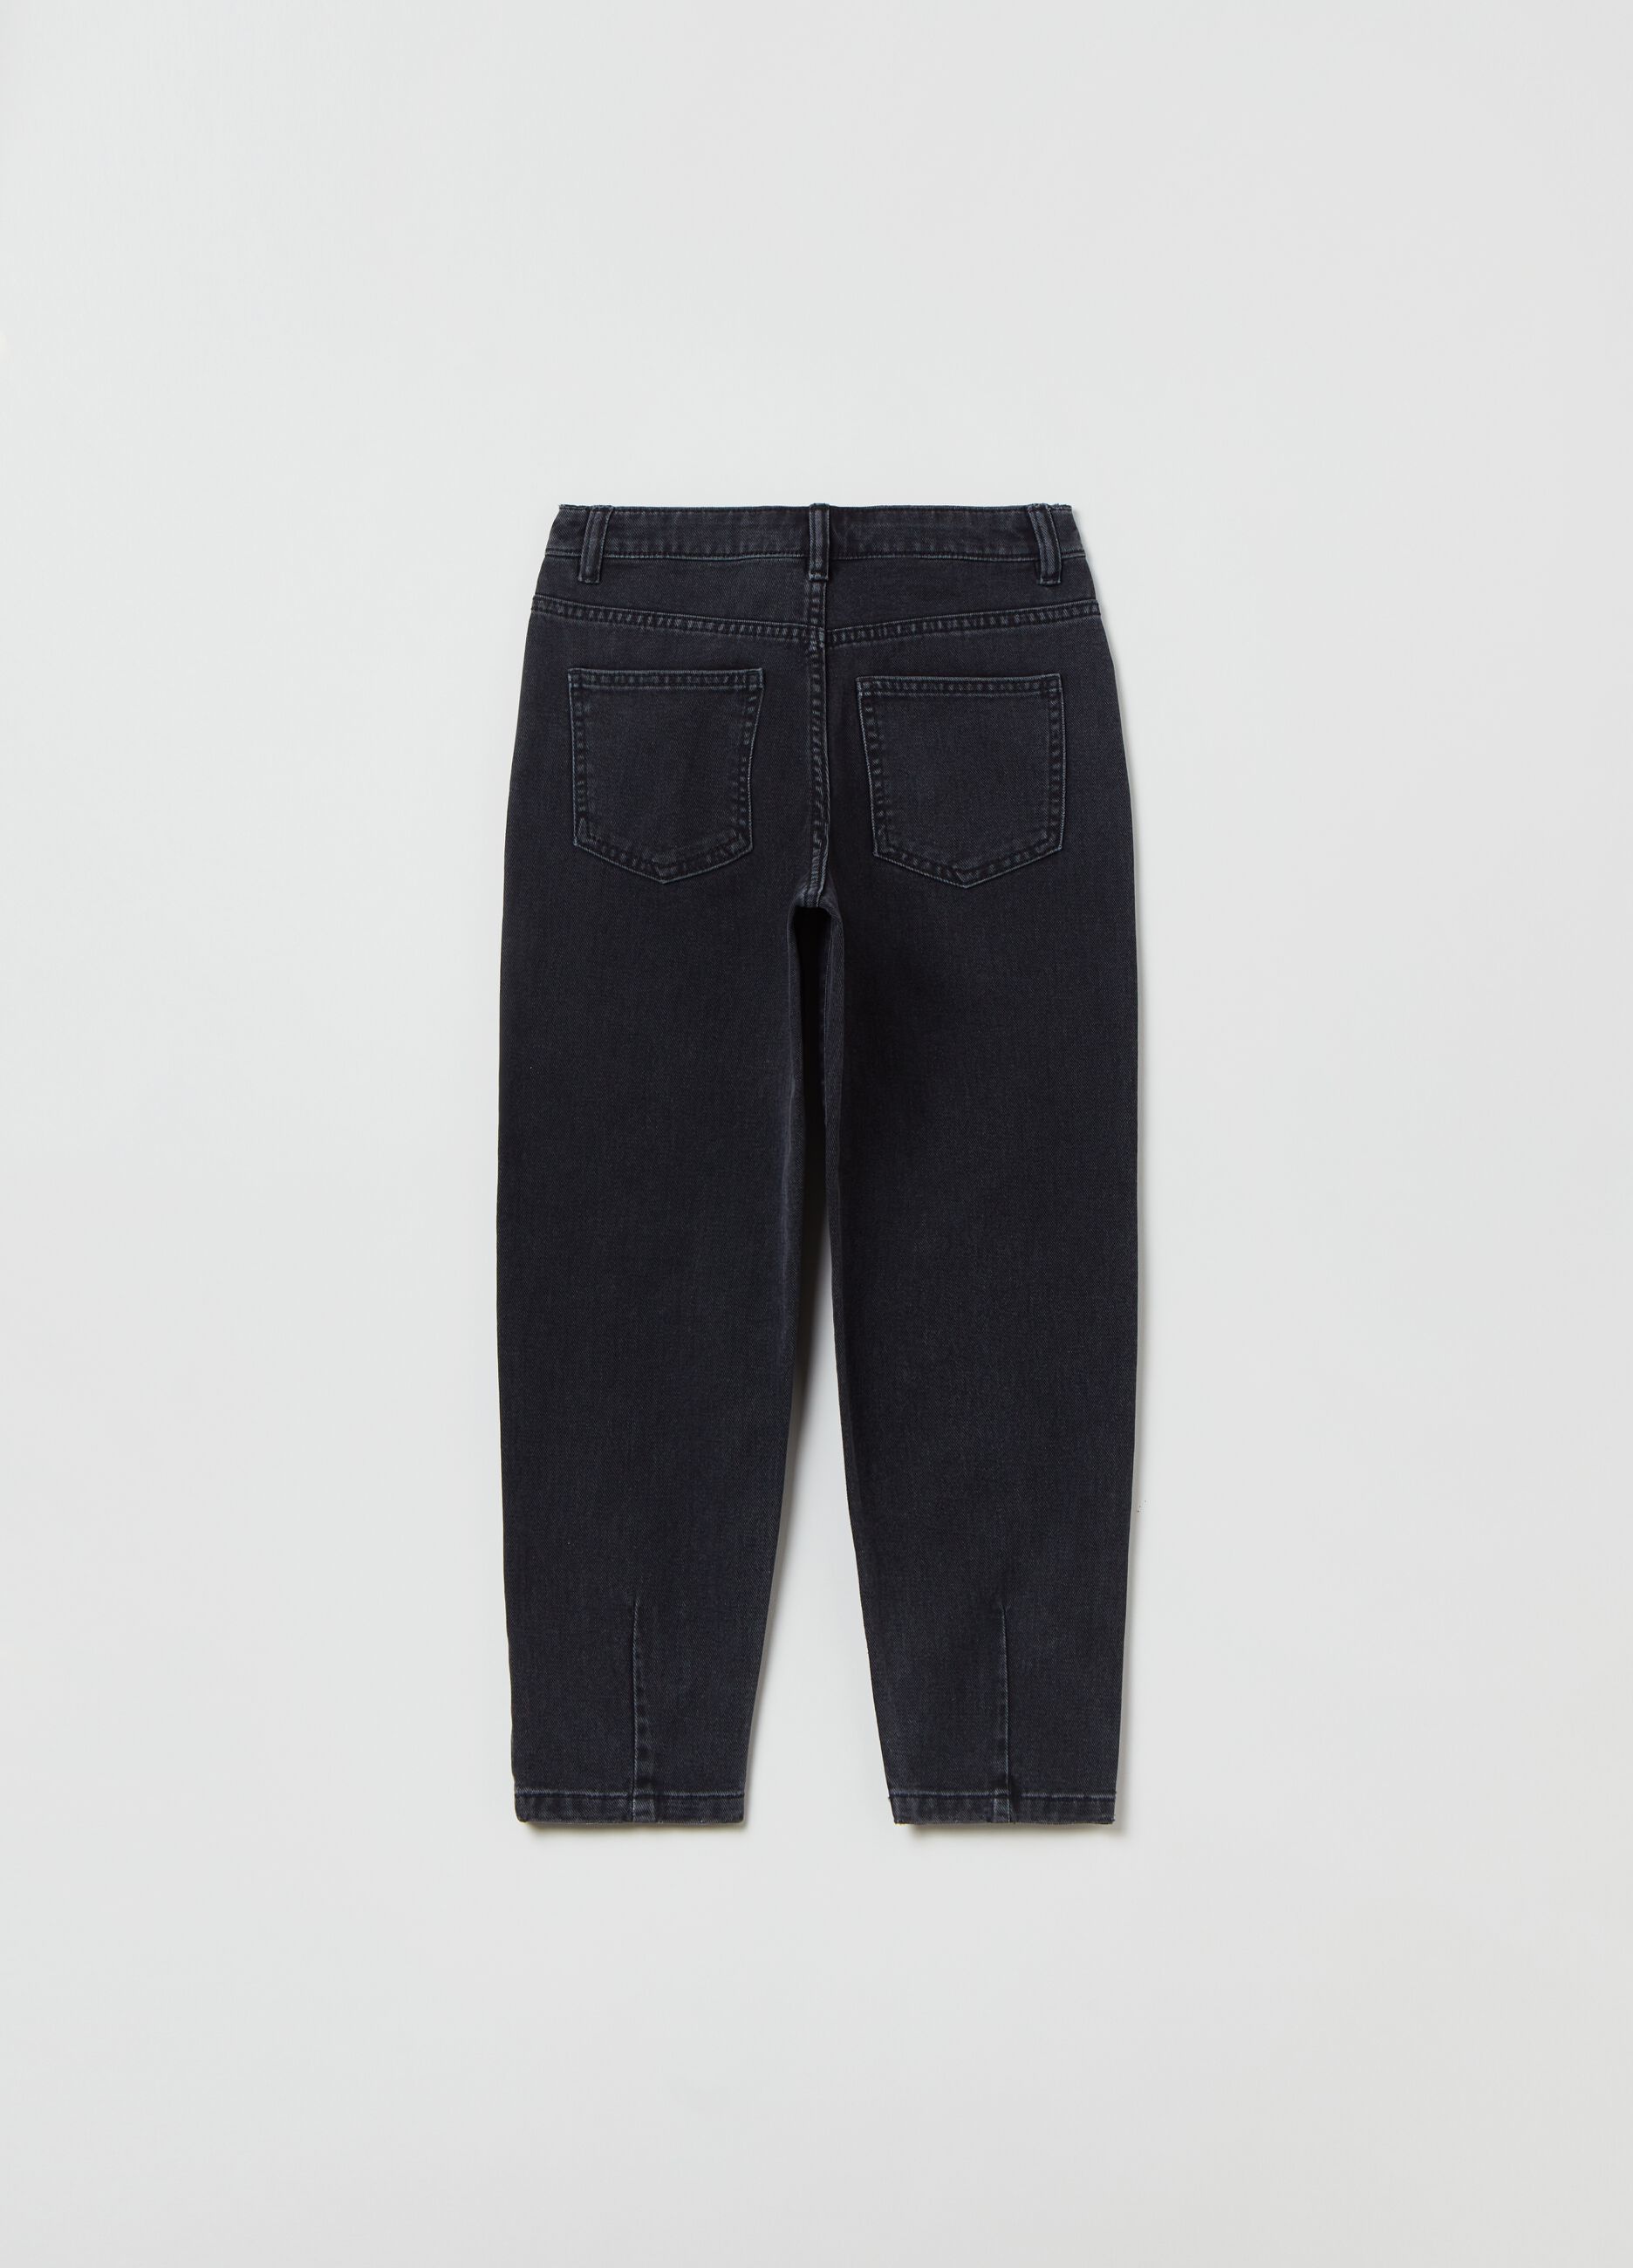 5-pocket, mum-fit jeans.